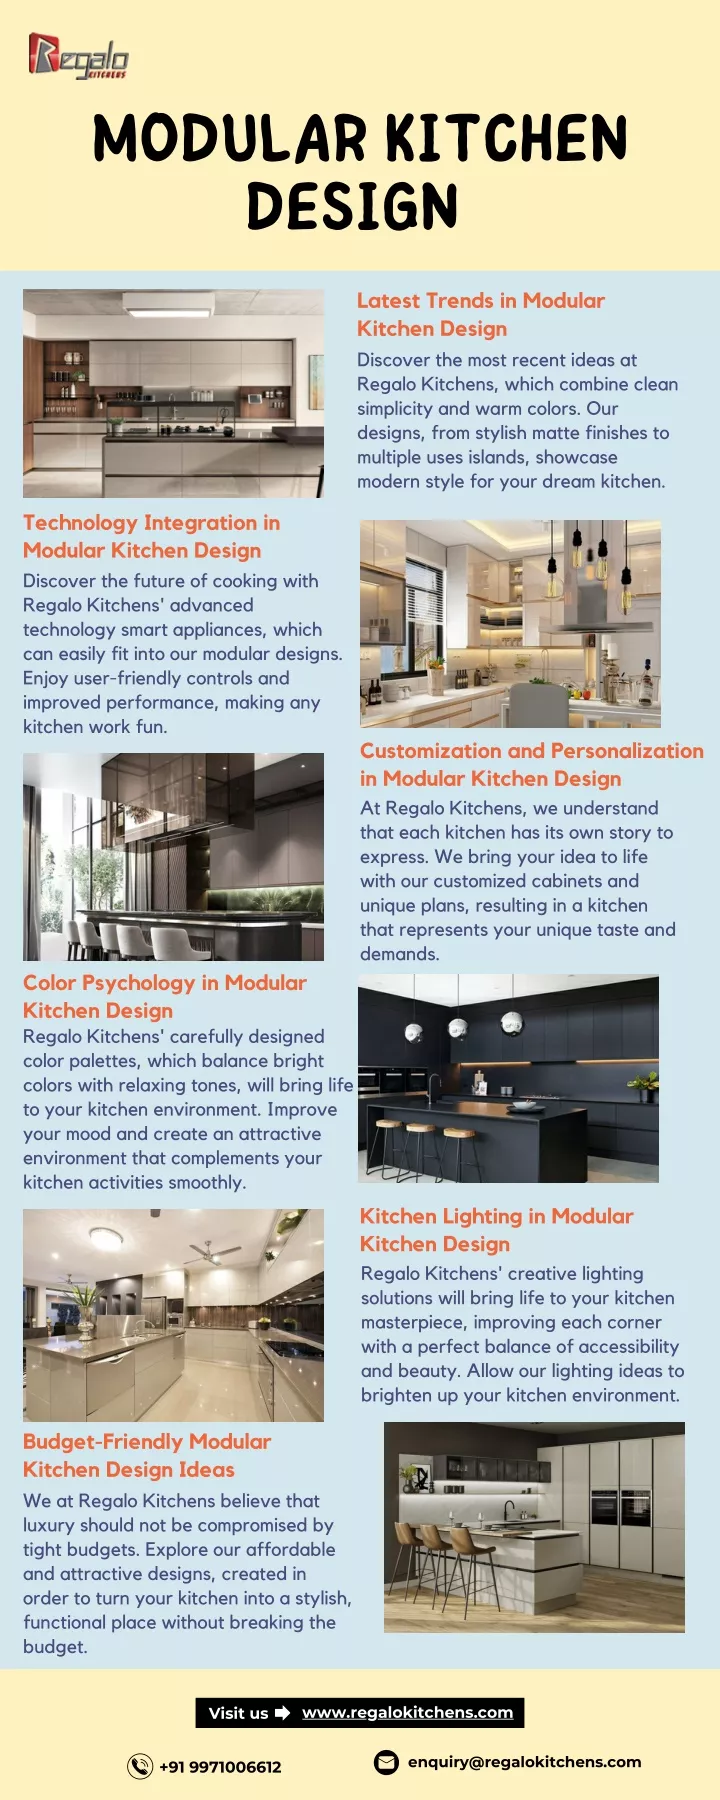 PPT - Modular Kitchen Design | Regalo Kitchens PowerPoint Presentation ...